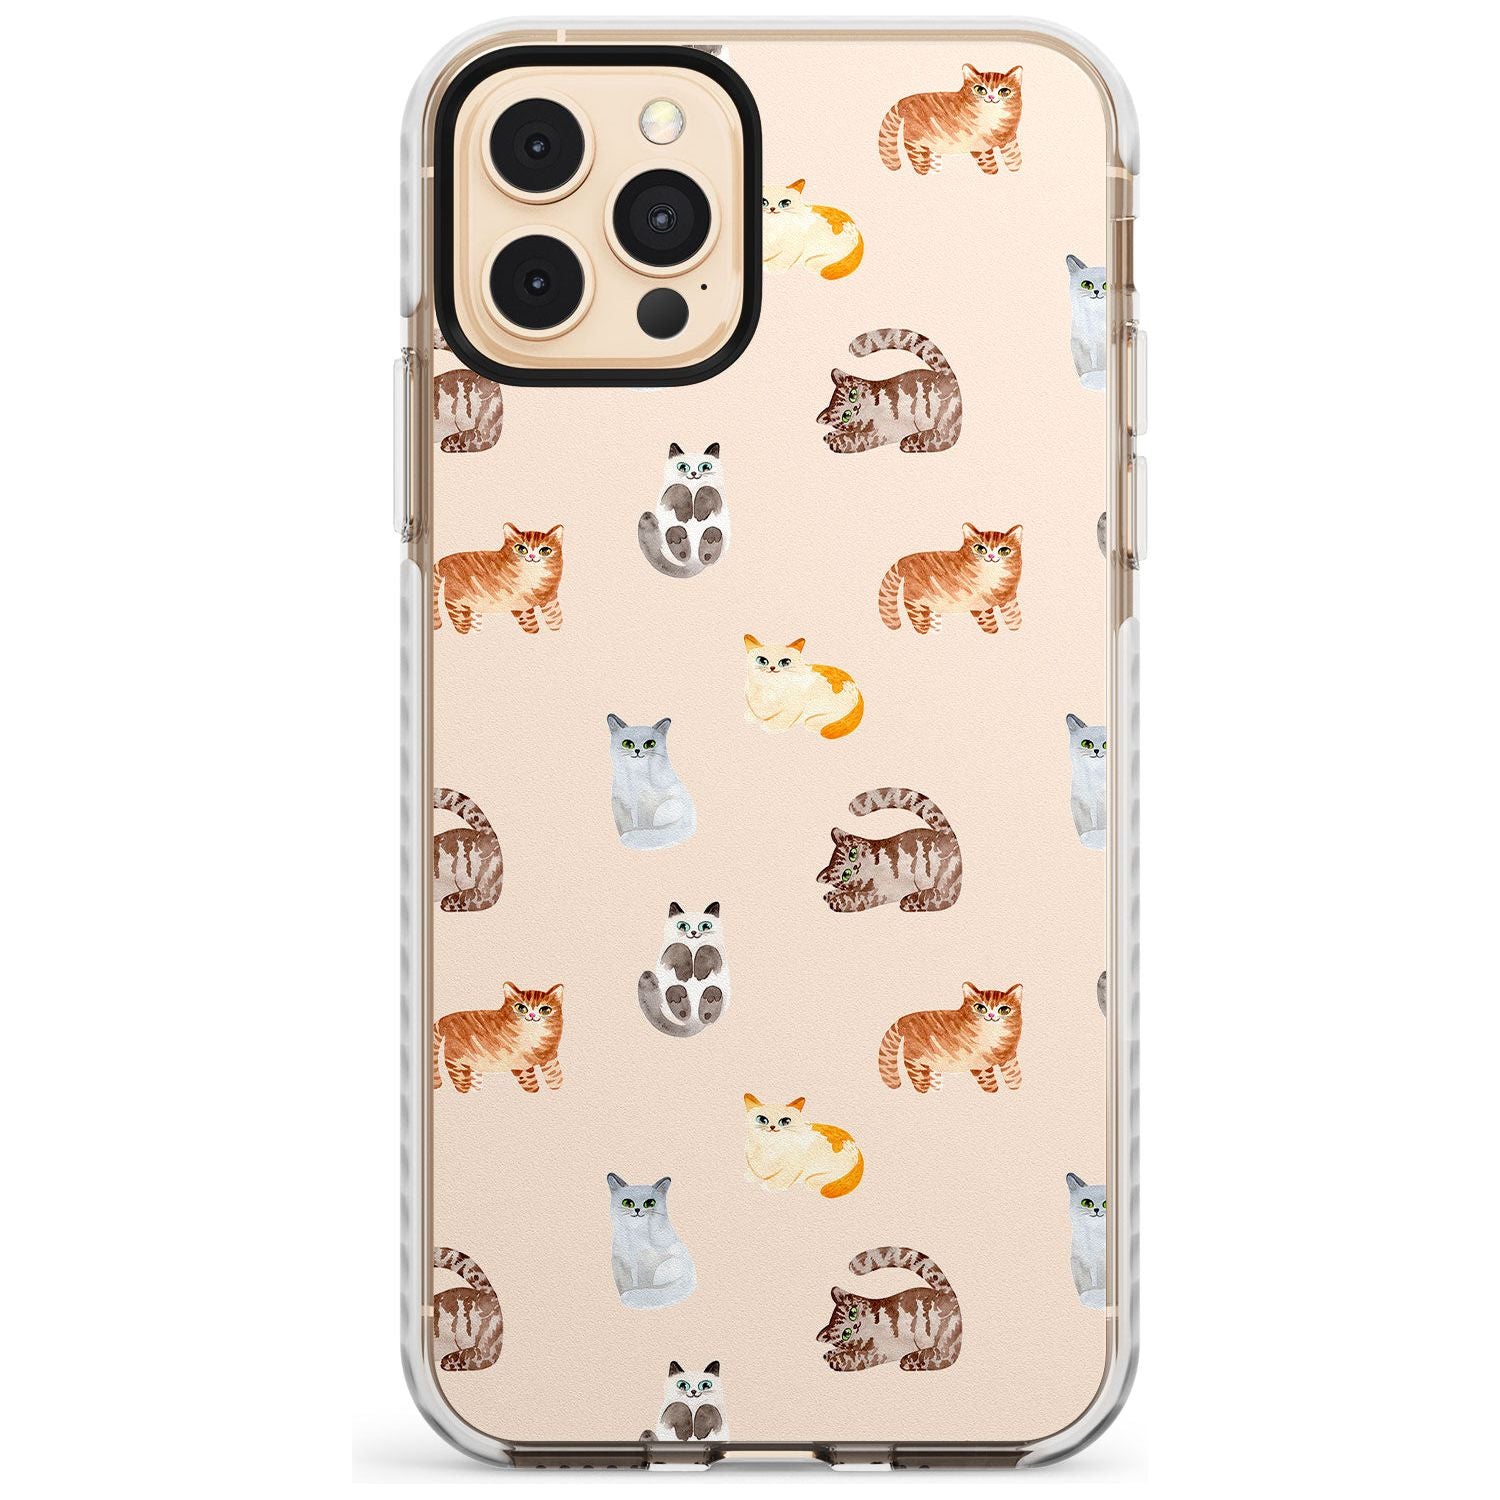 Cute Cat Pattern Slim TPU Phone Case for iPhone 11 Pro Max